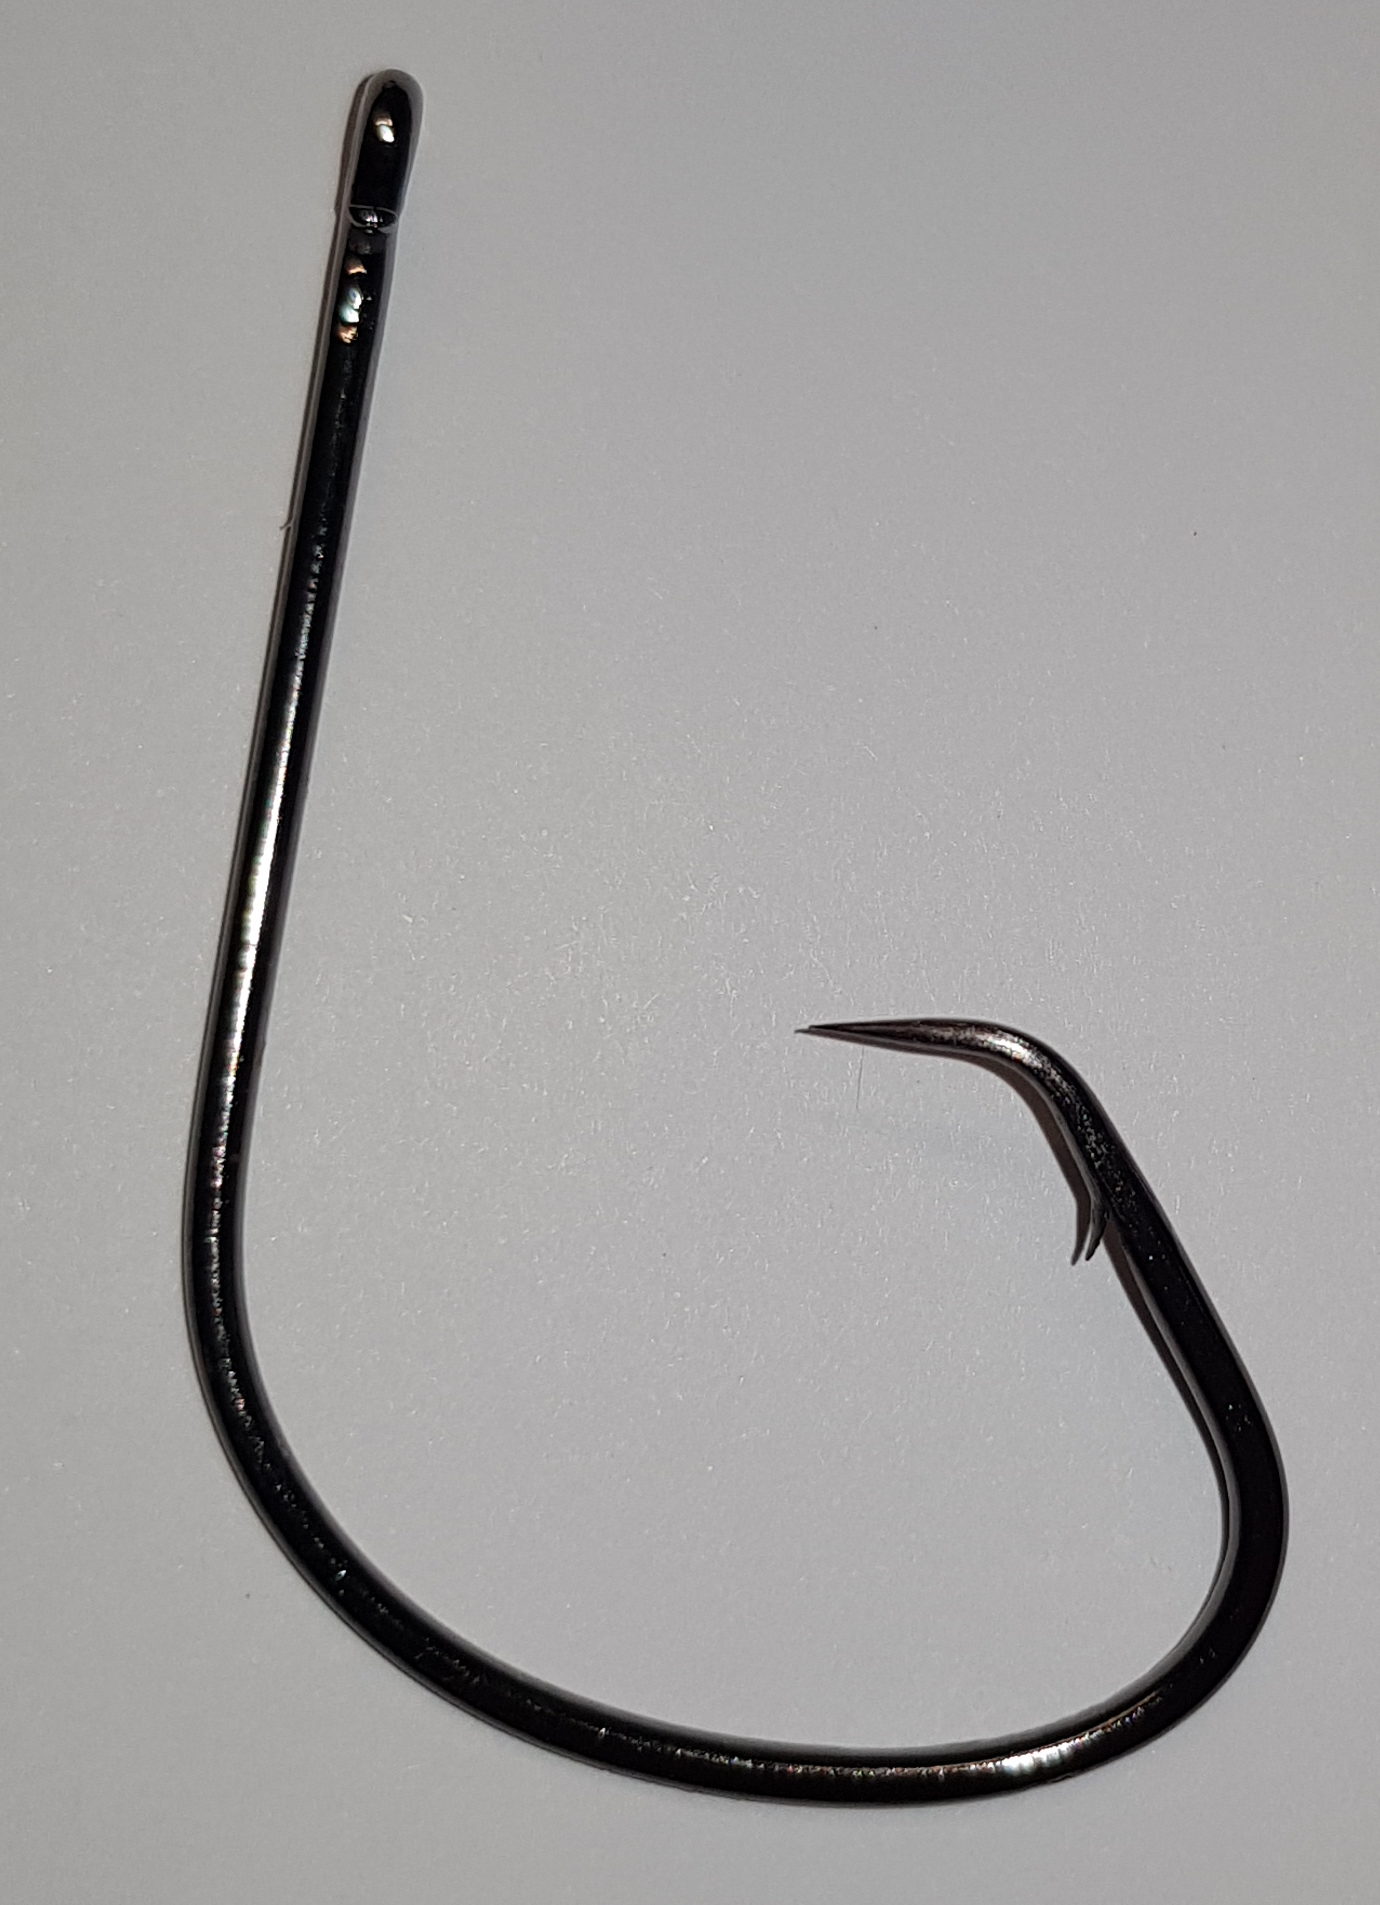 Circle hook 9/0 100pk fishing hooks – Online Fishen Supplies